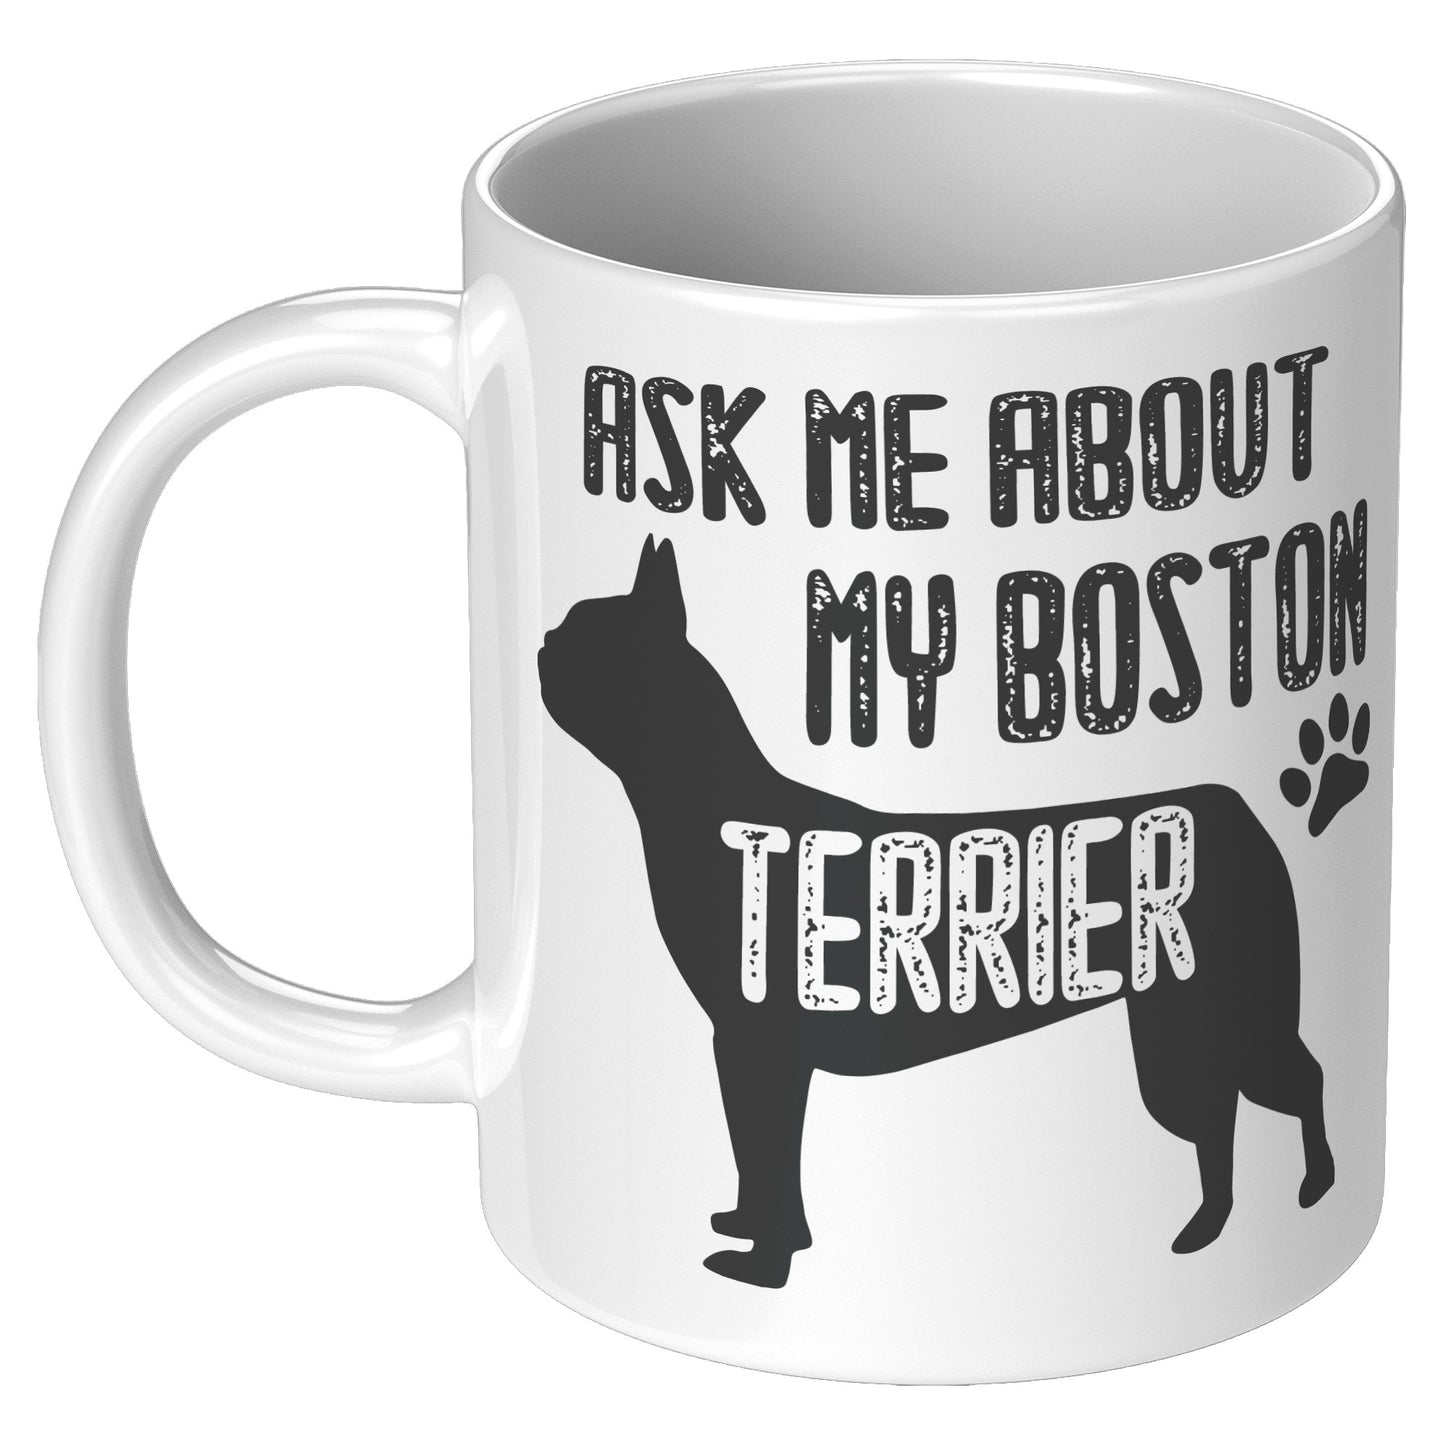 Banjo -Mug for Boston Terrier lovers